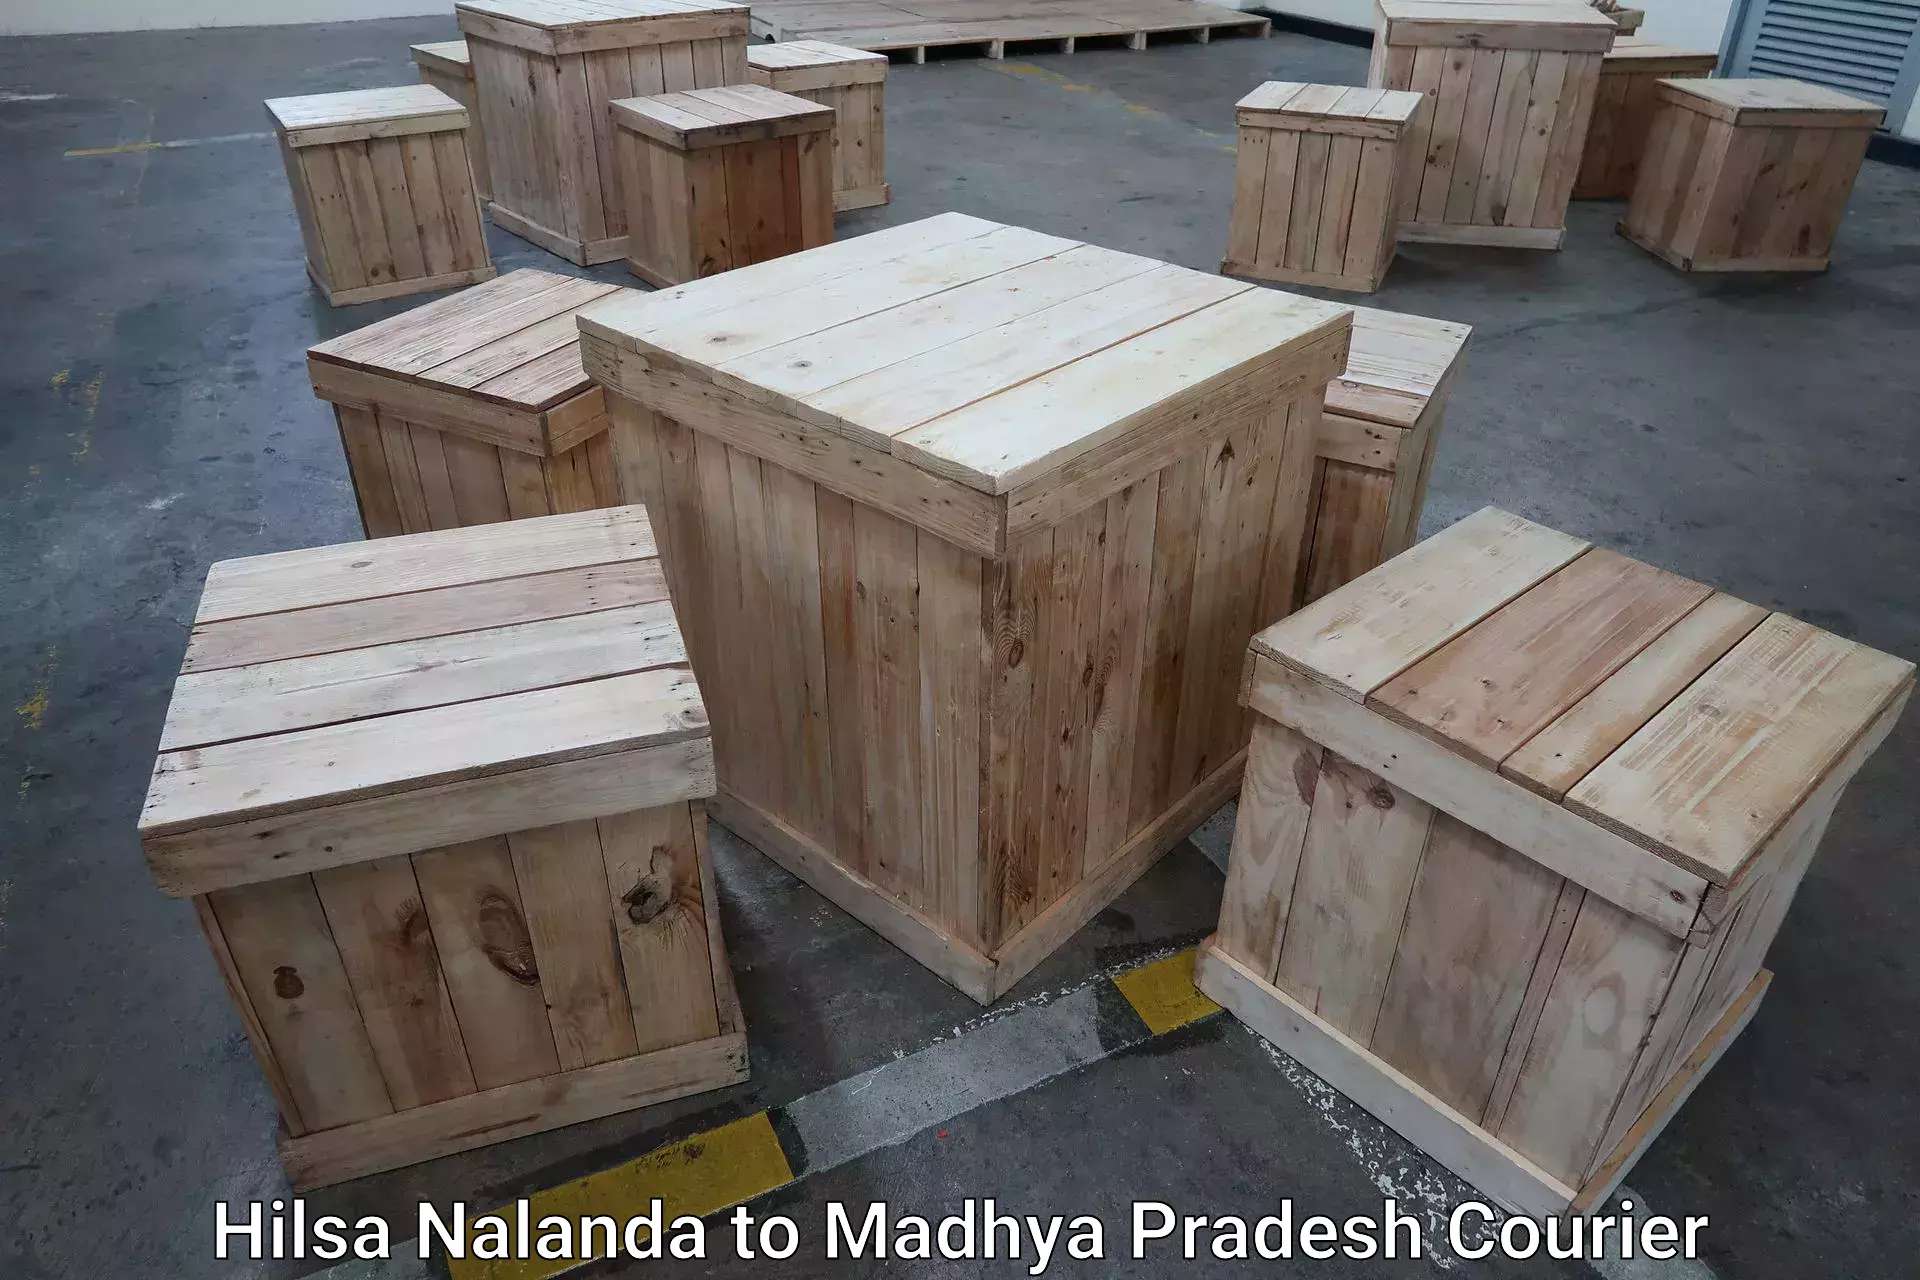 Automated luggage transport Hilsa Nalanda to Jatara